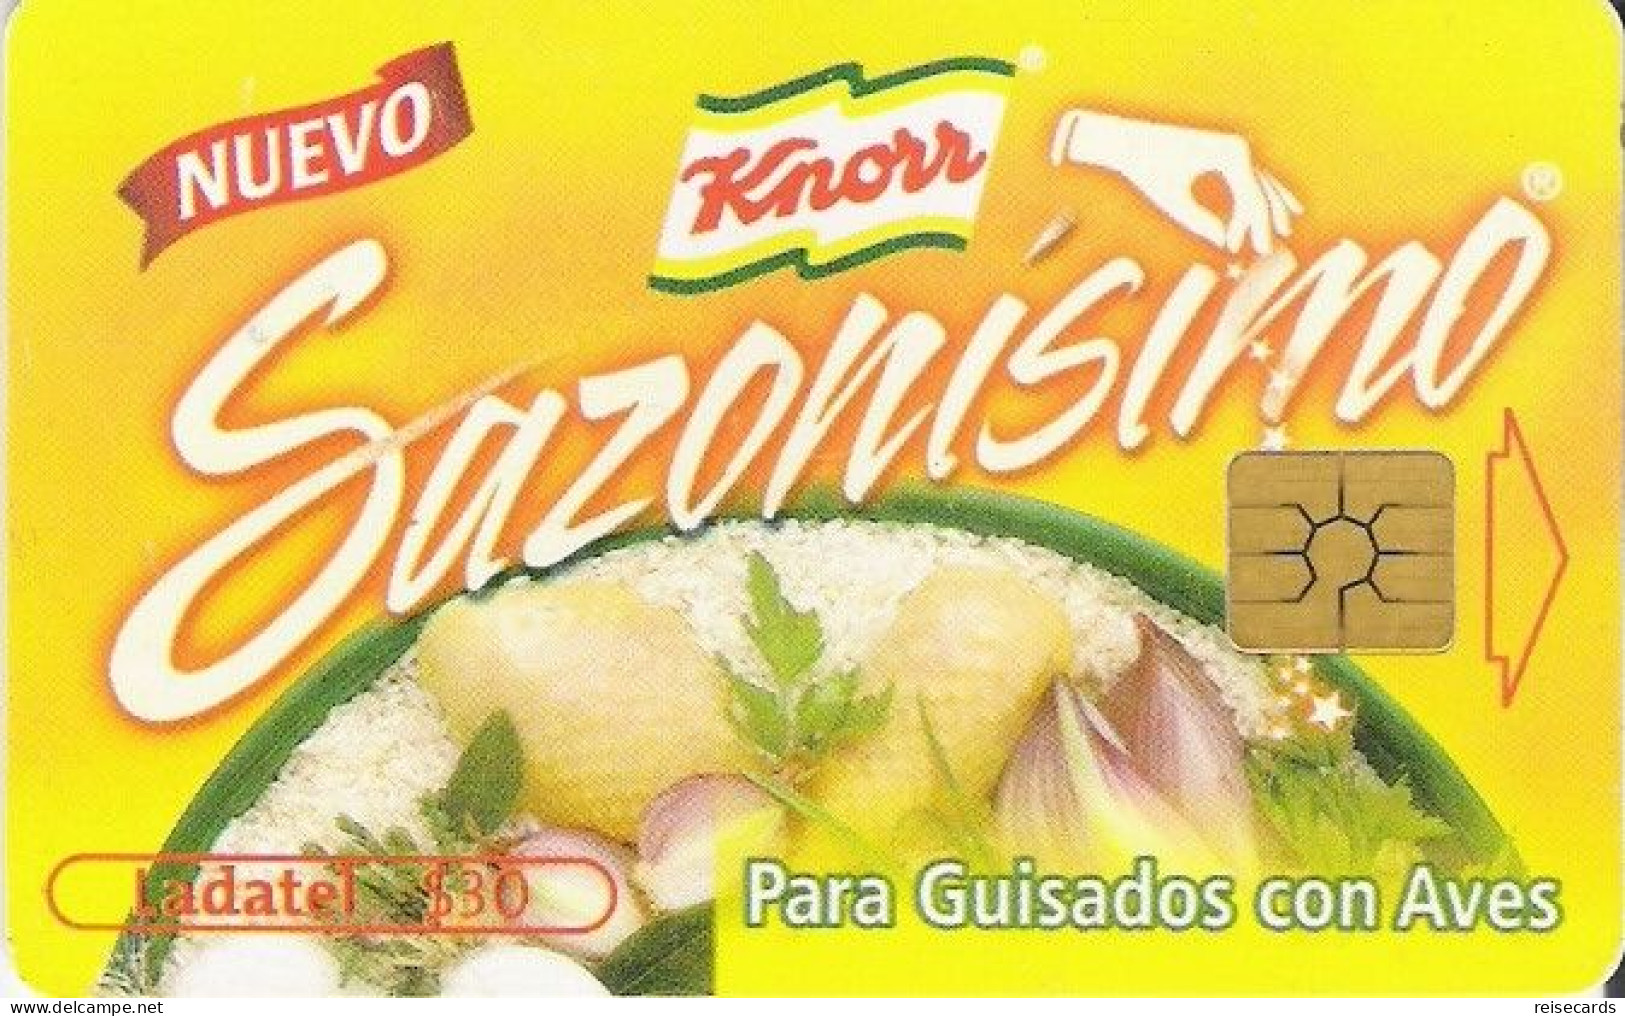 Mexico: Telmex/lLadatel - 2002 Knorr, Sazonisimo - Mexique